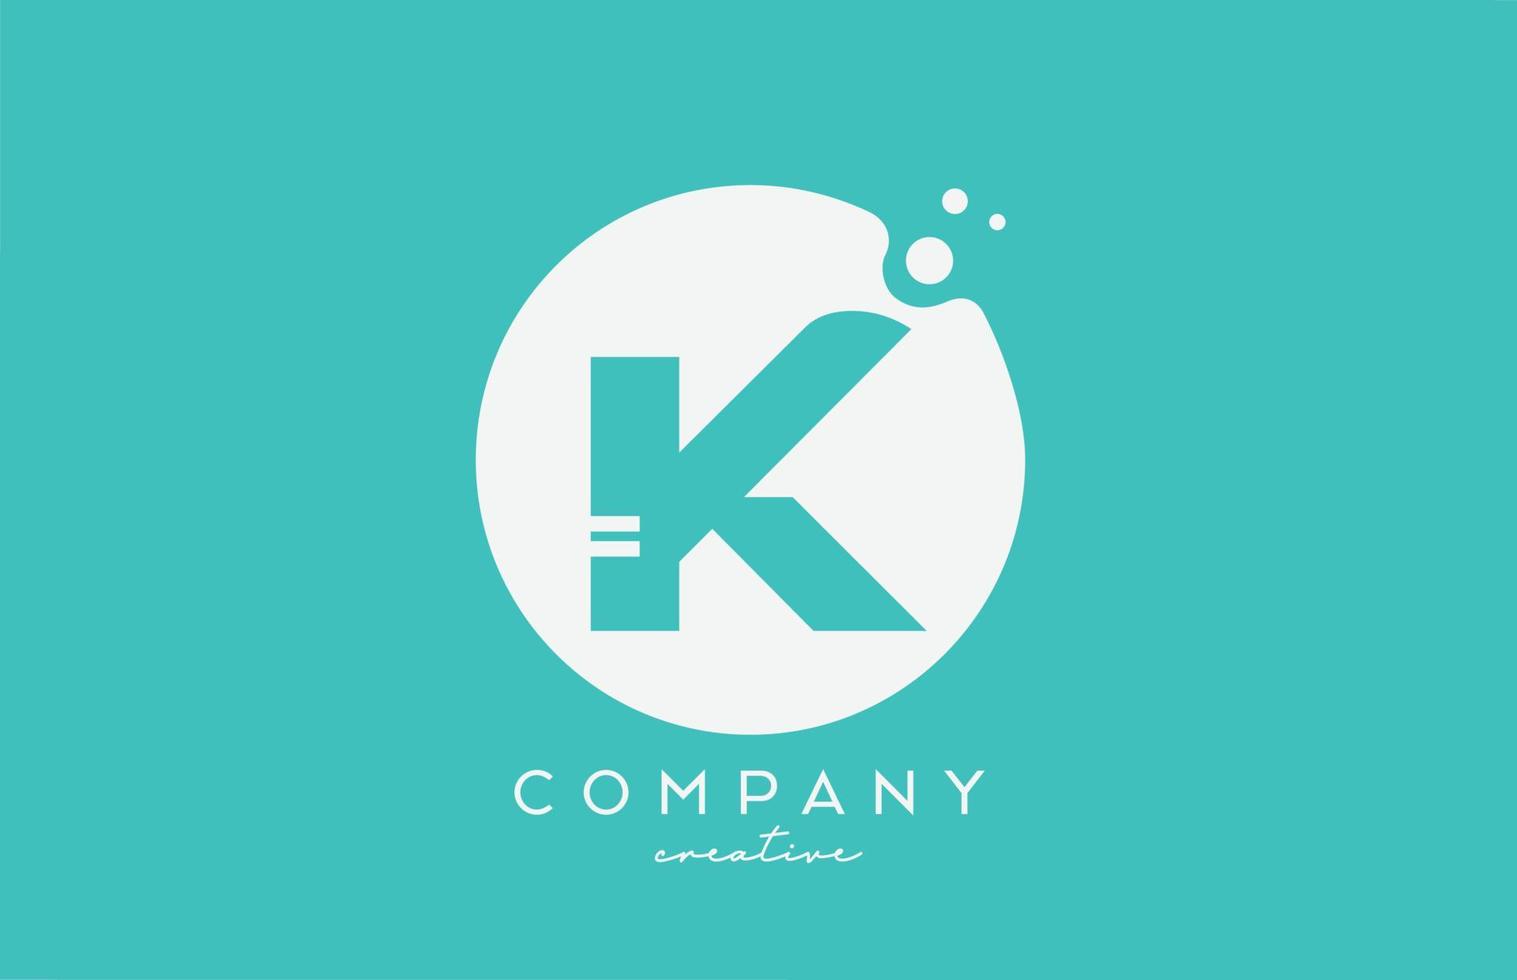 projeto do ícone do logotipo da letra do alfabeto do círculo verde ciano k com pontos. modelo criativo para negócios e empresa vetor